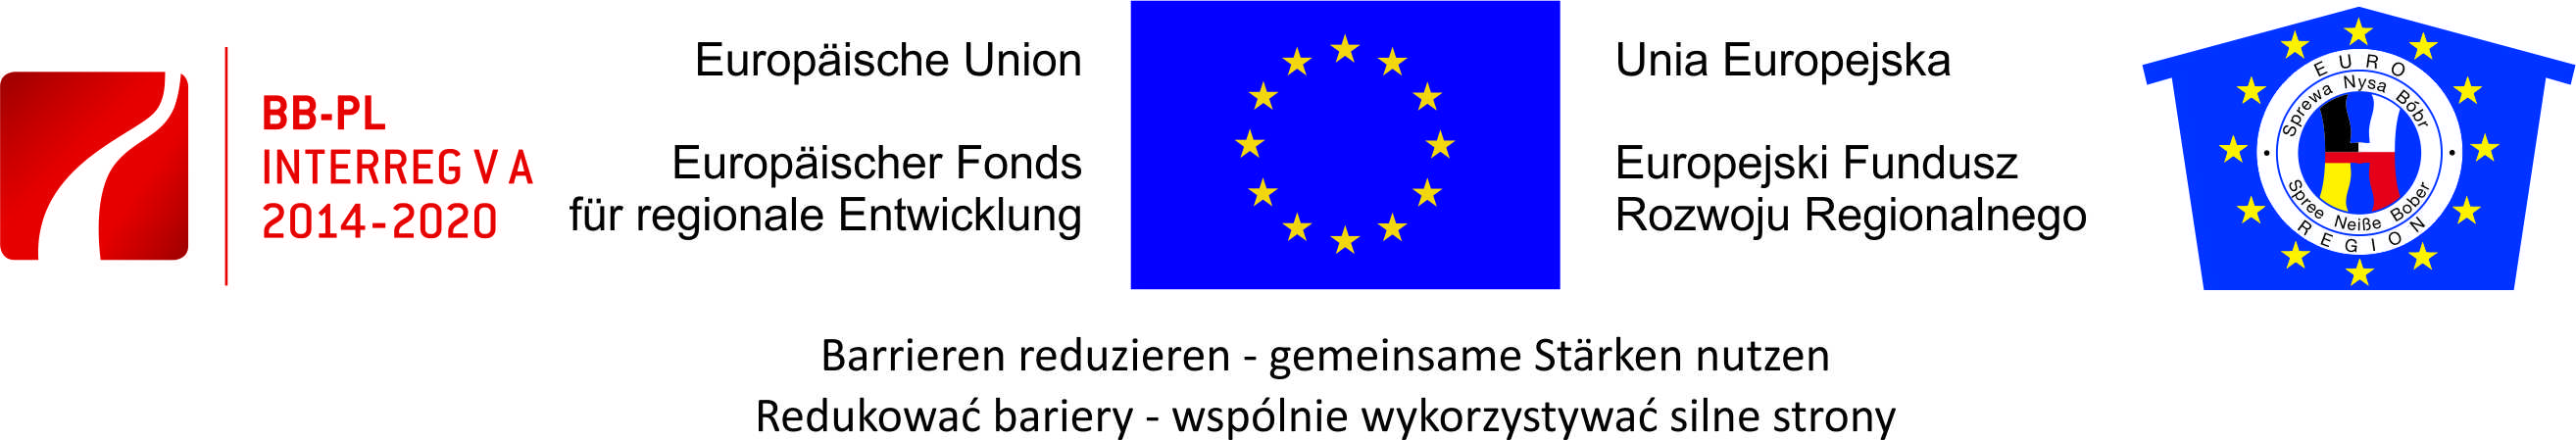 BB-PL INTERREG VA | Europäische Union - Europäischer Fonds für regionale Entwicklung | Euroregion Spree-Neiße-Bober